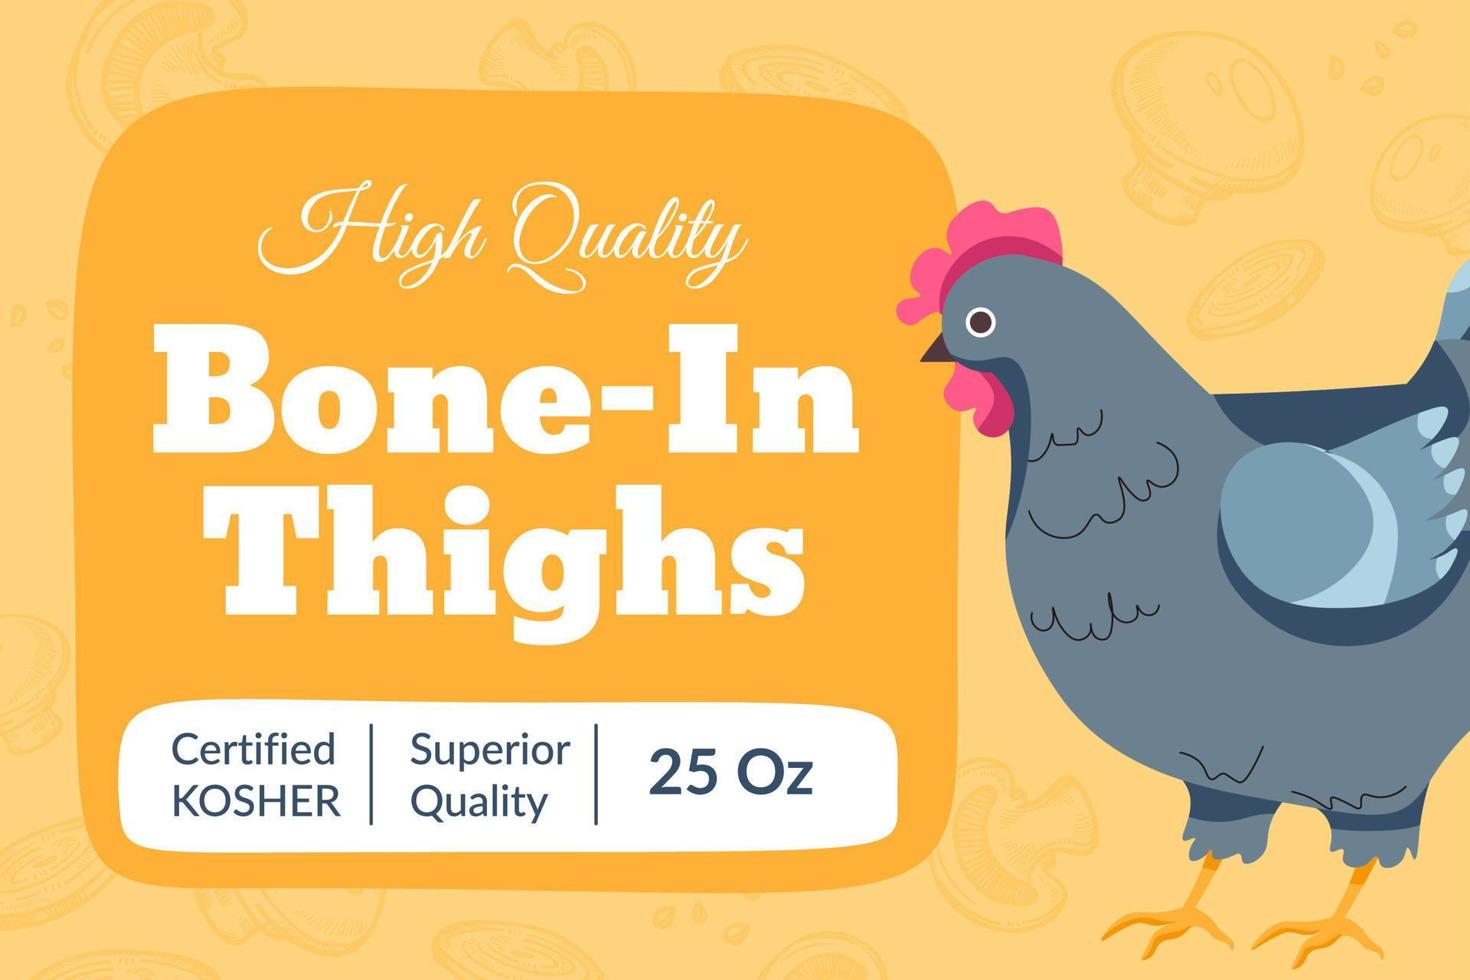 Knochen in den Oberschenkeln, hochwertiges Hühnerfleisch-Banner vektor